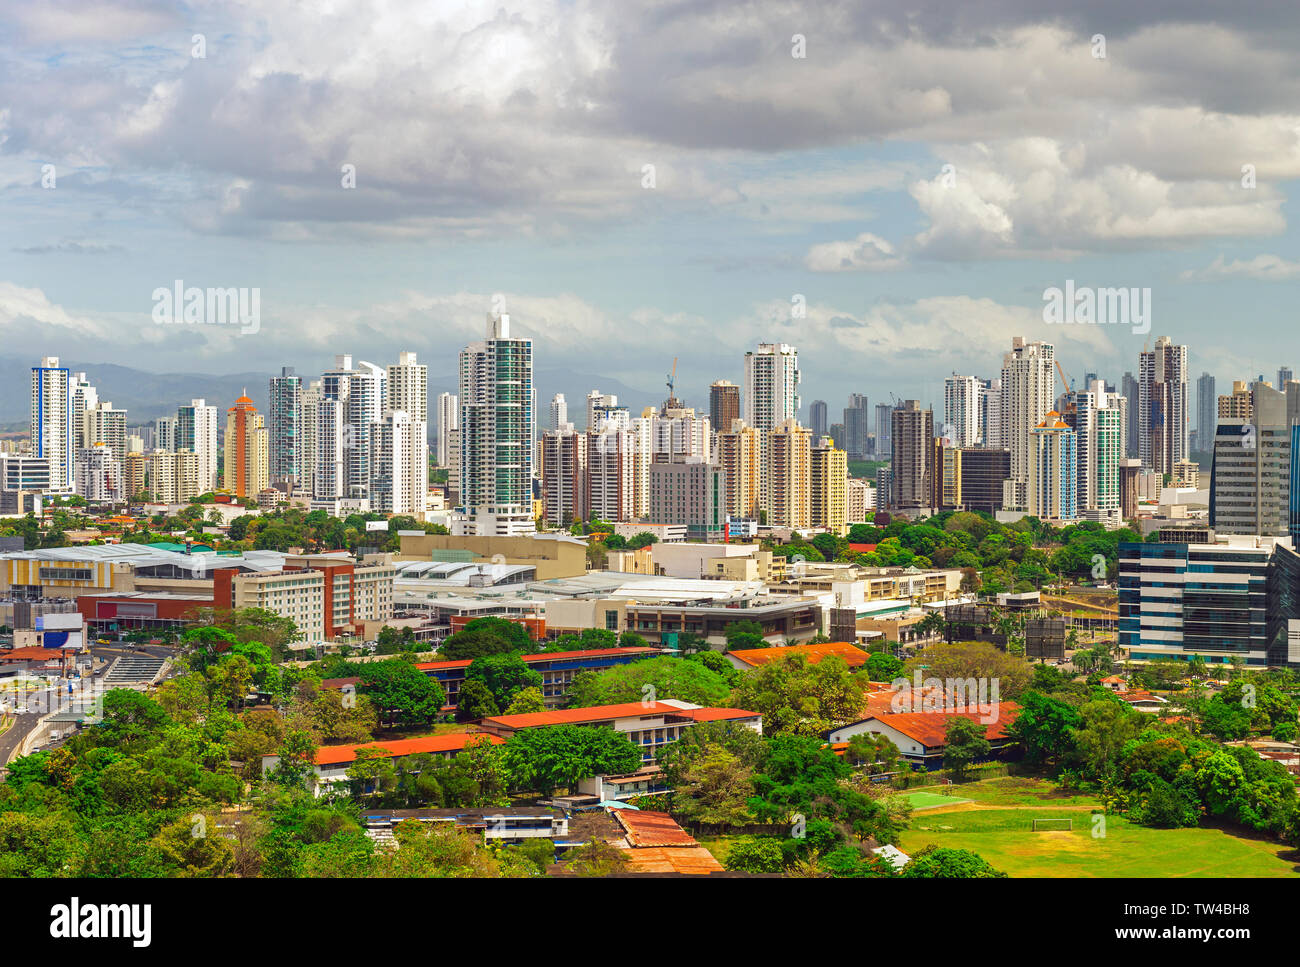 Le paysage urbain de la ville de Panama avec ses impressionnants gratte-ciel au lever du soleil, au Panama. Banque D'Images